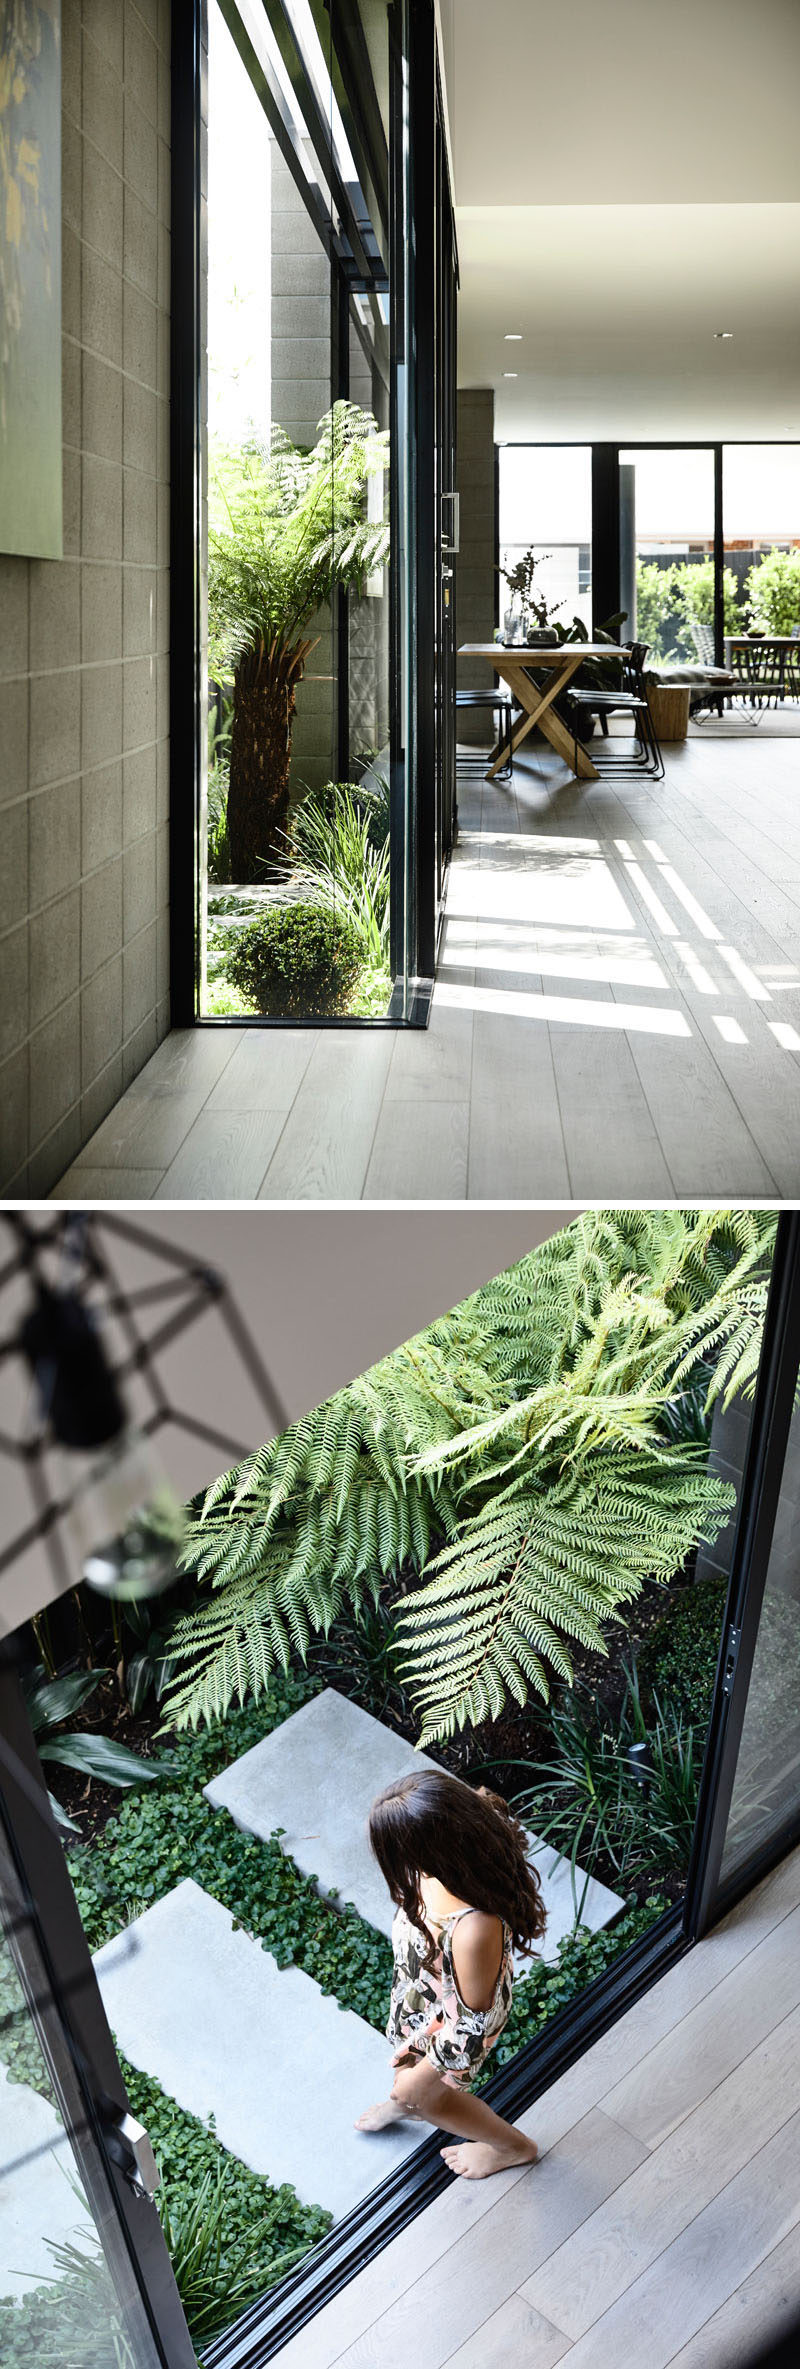 В этом современном доме есть небольшой боковой двор, в который можно попасть через раздвижные стеклянные двери. # Озеленение # Сад